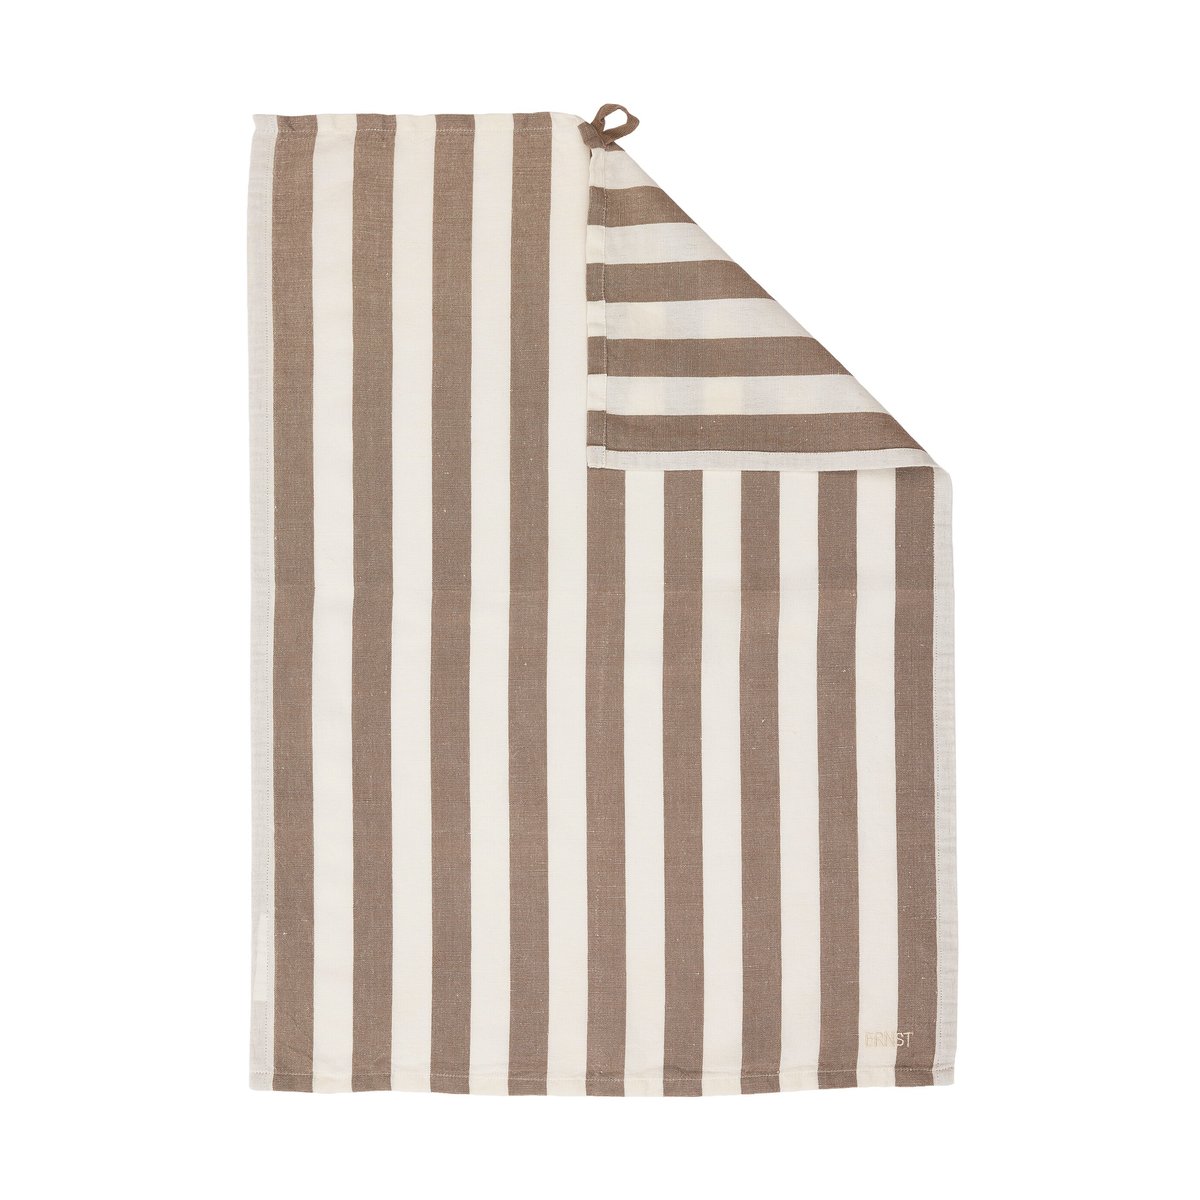 ERNST Ernst kjøkkenhåndkle brede striper 47×70 cm Muldvarp-hvit